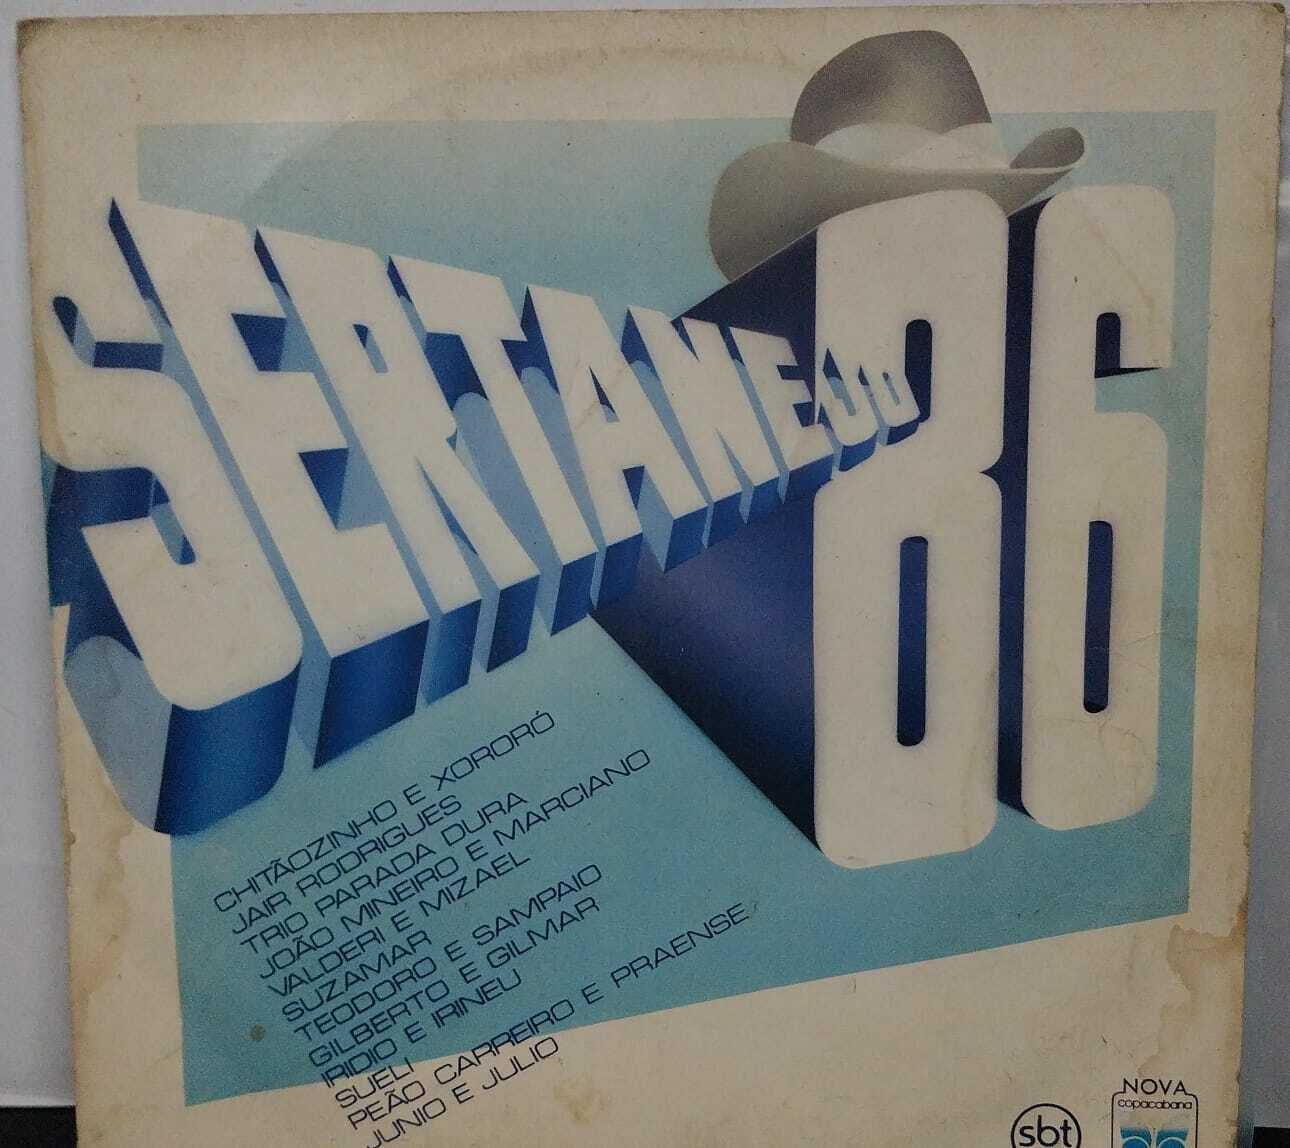 Vinil - Sertanejo 86